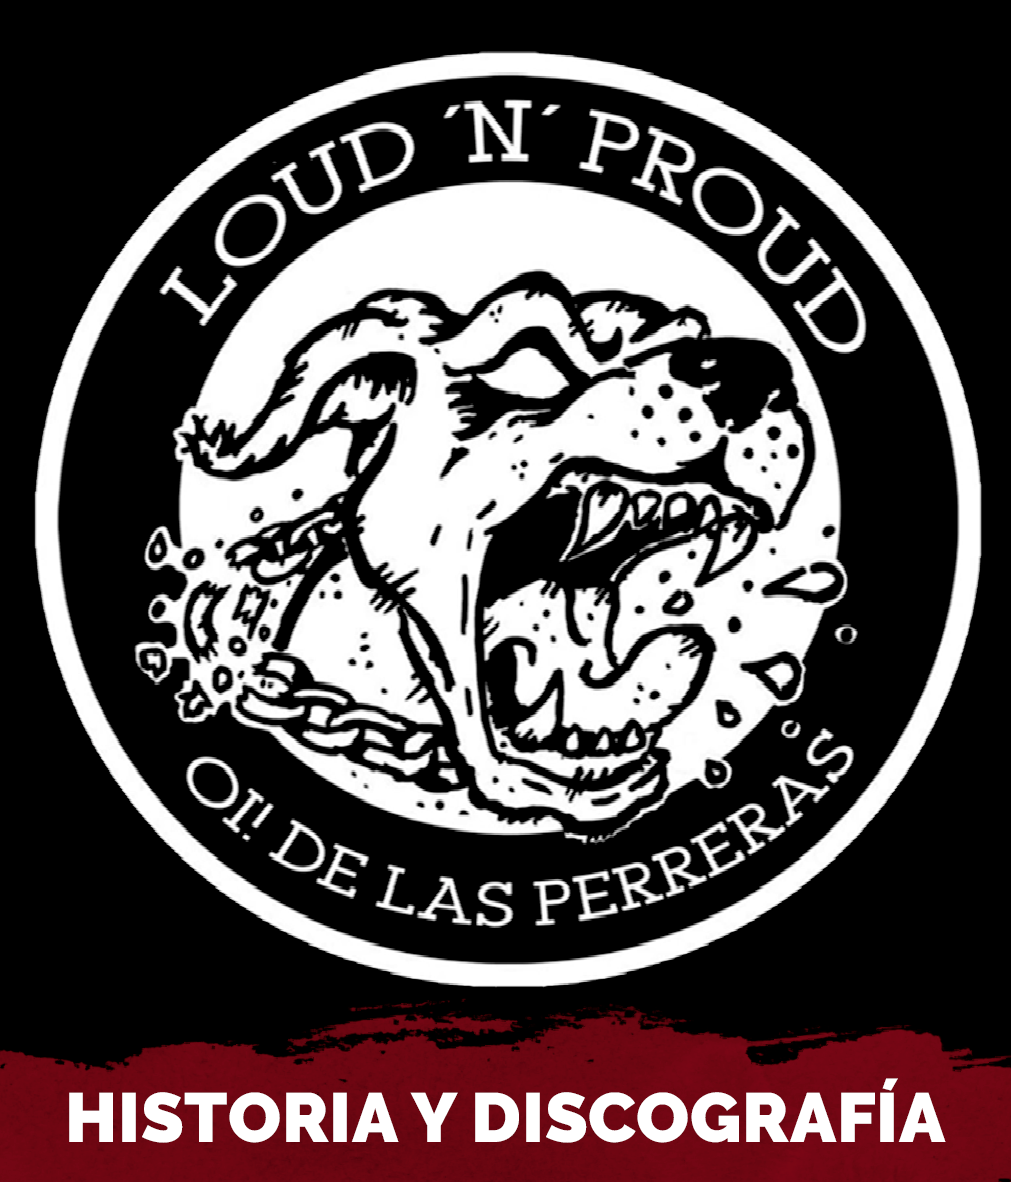 Loud n proud logo